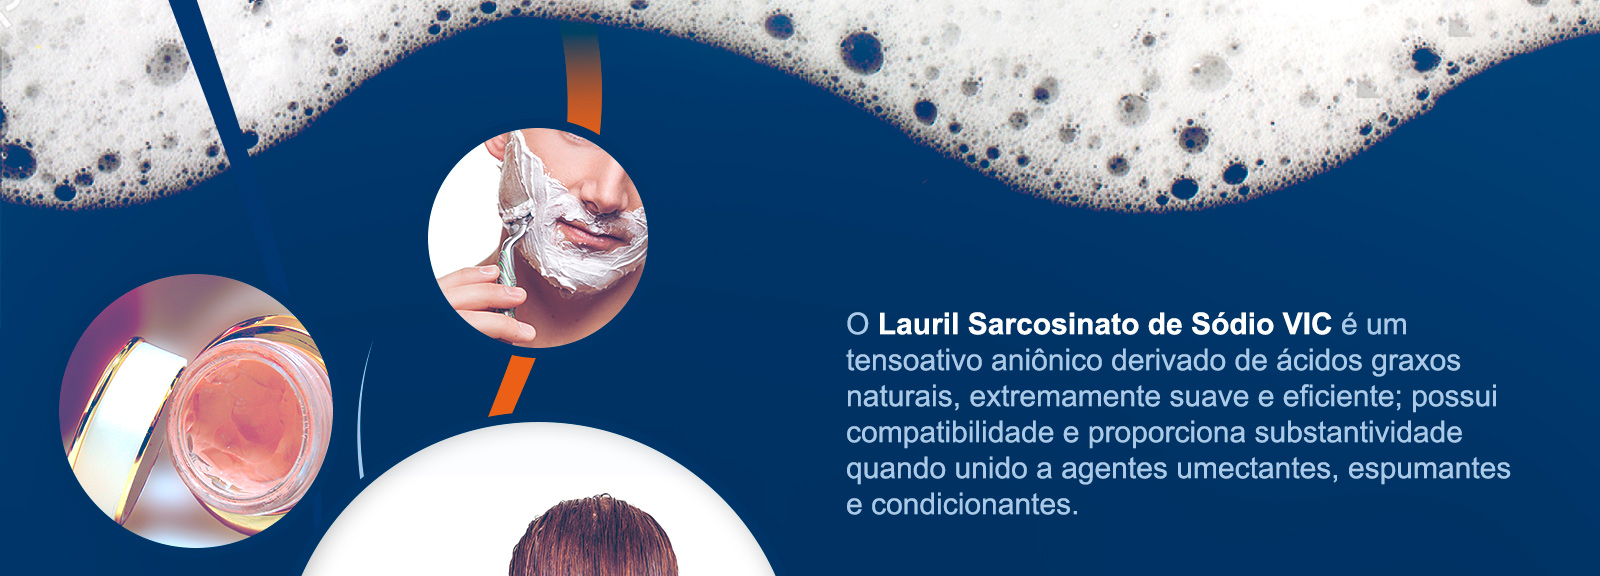 O Lauril Sarcosinato de Sódio VIC é um tensoativo aniônico derivado de ácidos graxos naturais, extremamente suave e eficiente; possui compatibilidade e proporciona substantividade quando unido a agentes umectantes, espumantes e condicionantes.